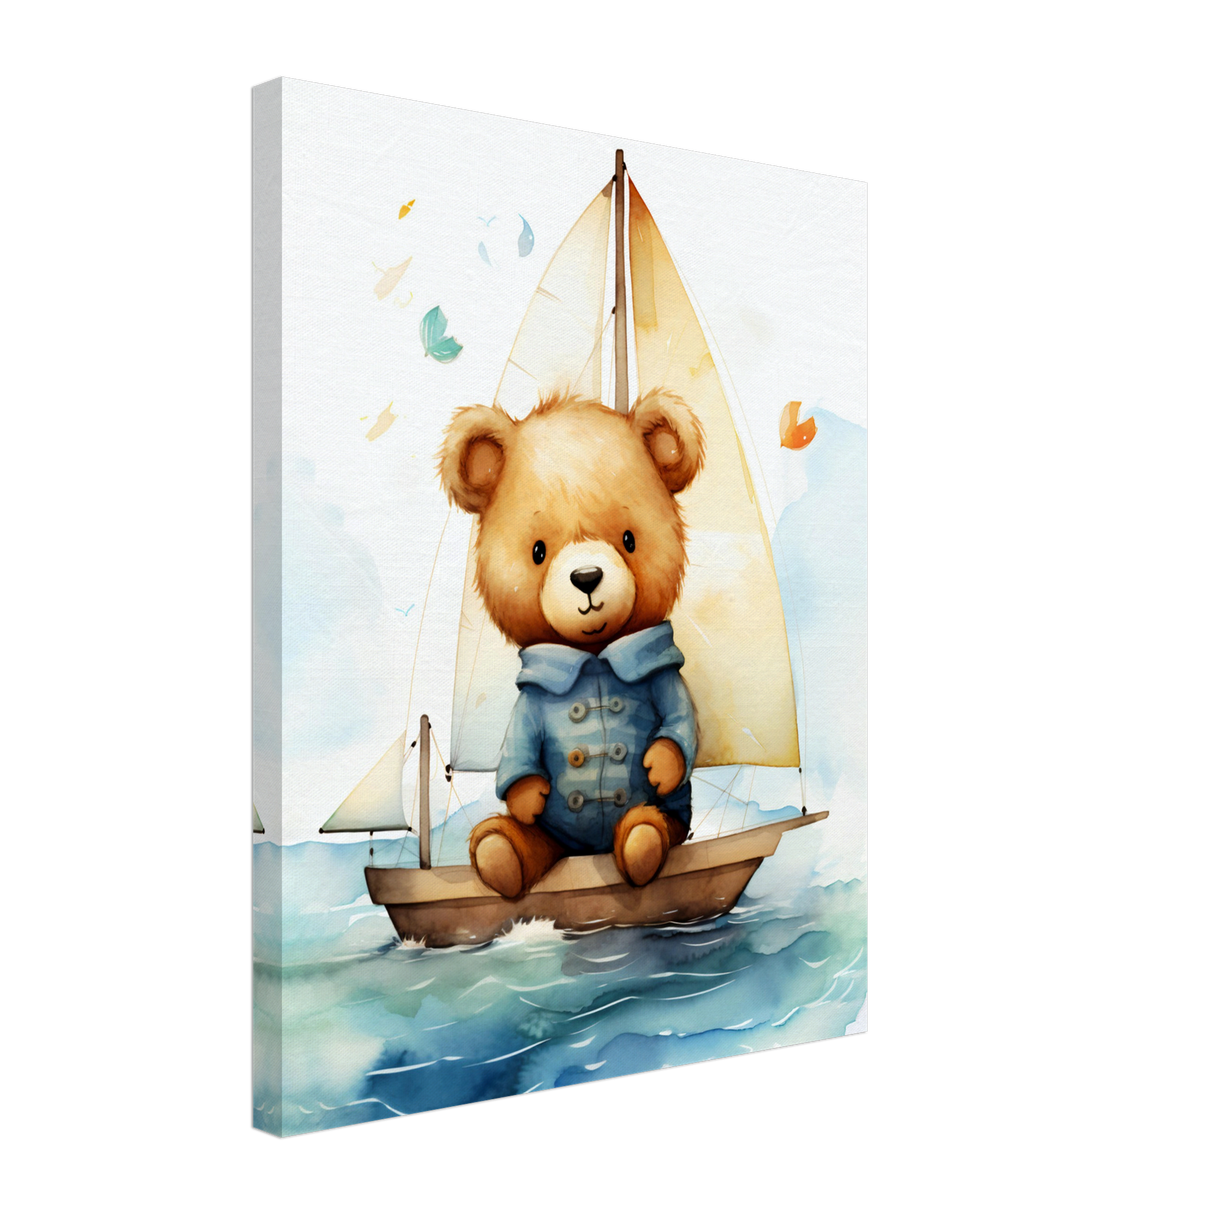 Sailing Teddy